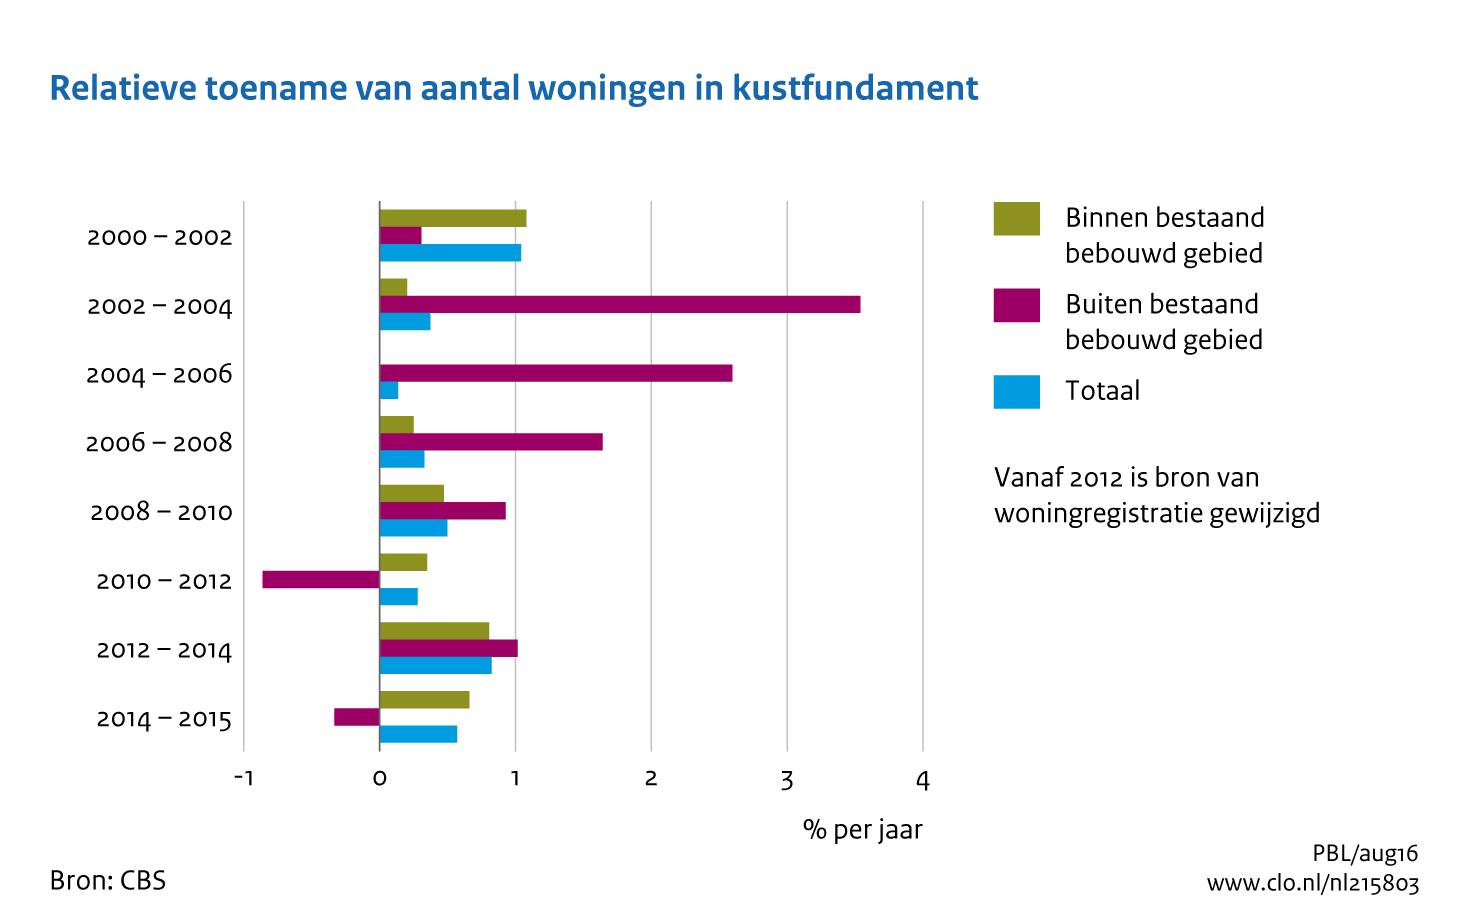 Figuur Relatieve toename woningen in het kustfundament, 2000-2012. In de rest van de tekst wordt deze figuur uitgebreider uitgelegd.